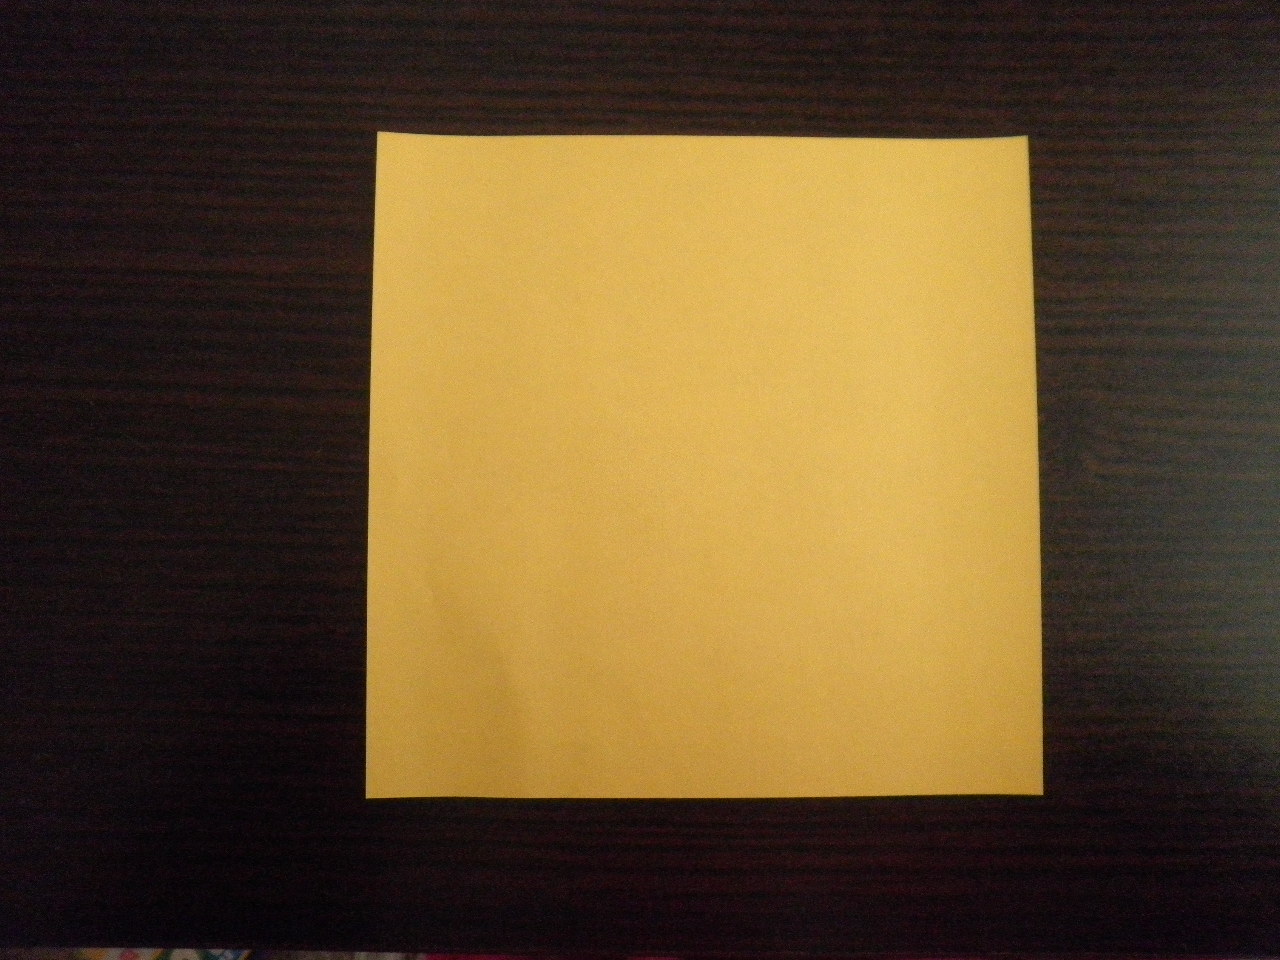 レモンじゃの折り方 折り紙作家 自称 あみごりの折り紙ルーム